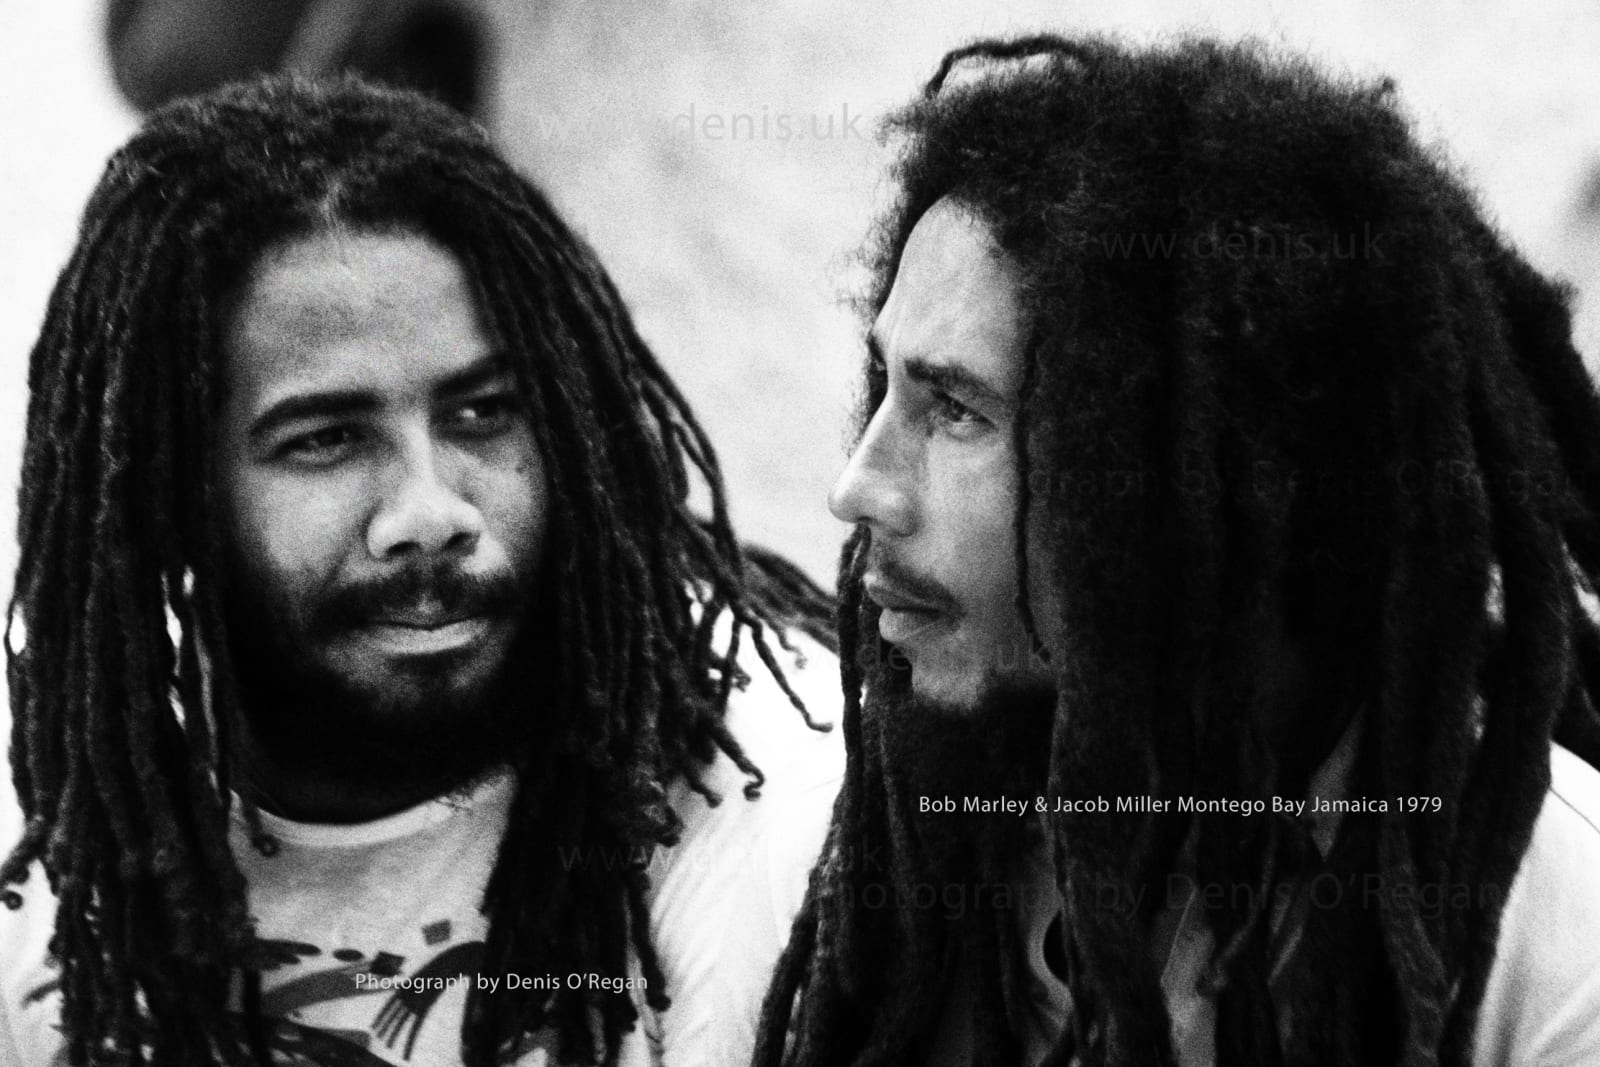 BOB MARLEY, Bob Marley & Jacob Miller, 1979